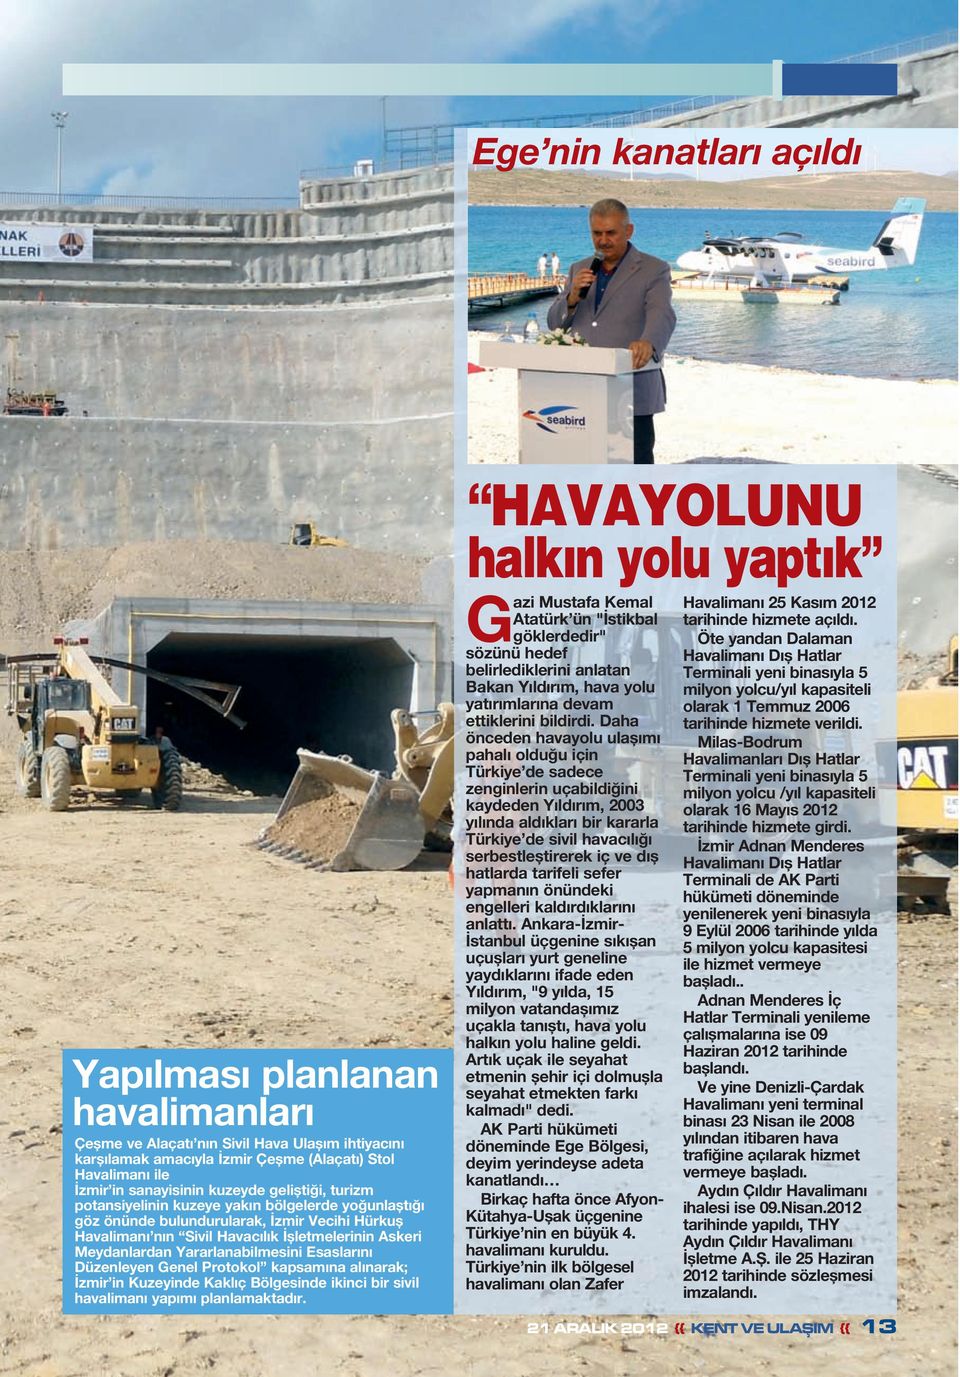 Yararlanabilmesini Esaslarını Düzenleyen Genel Protokol kapsamına alınarak; İzmir in Kuzeyinde Kaklıç Bölgesinde ikinci bir sivil havalimanı yapımı planlamaktadır.